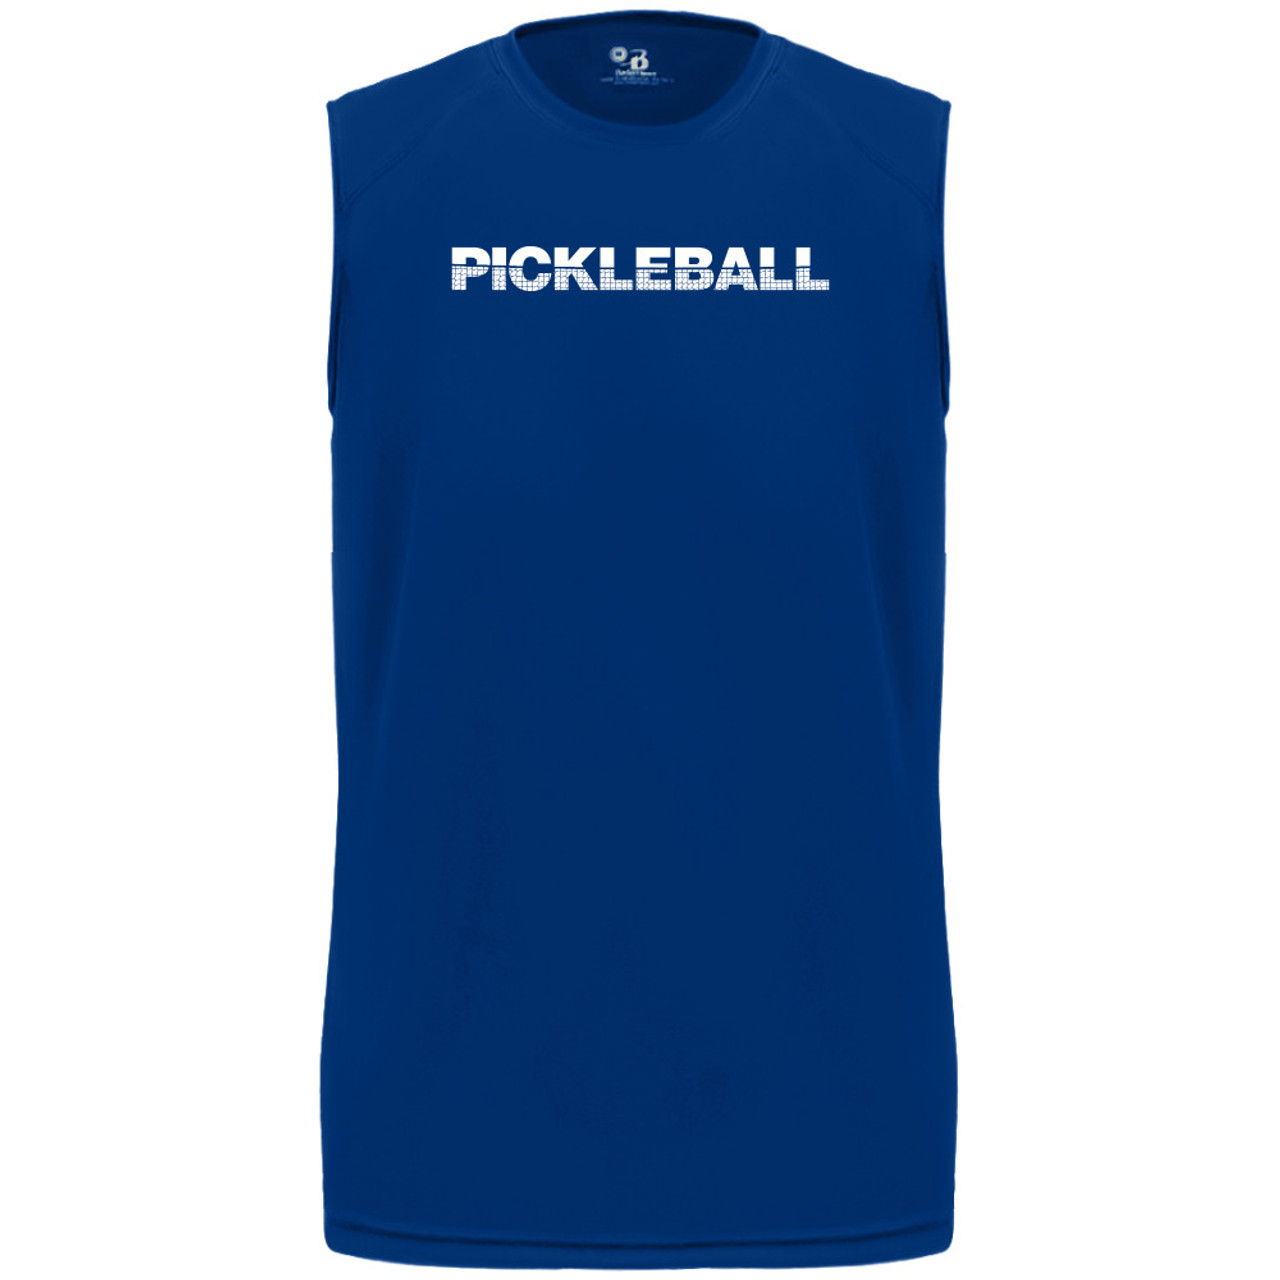 Pickleball Net Core Performance Sleeveless Shirt - Men's ...